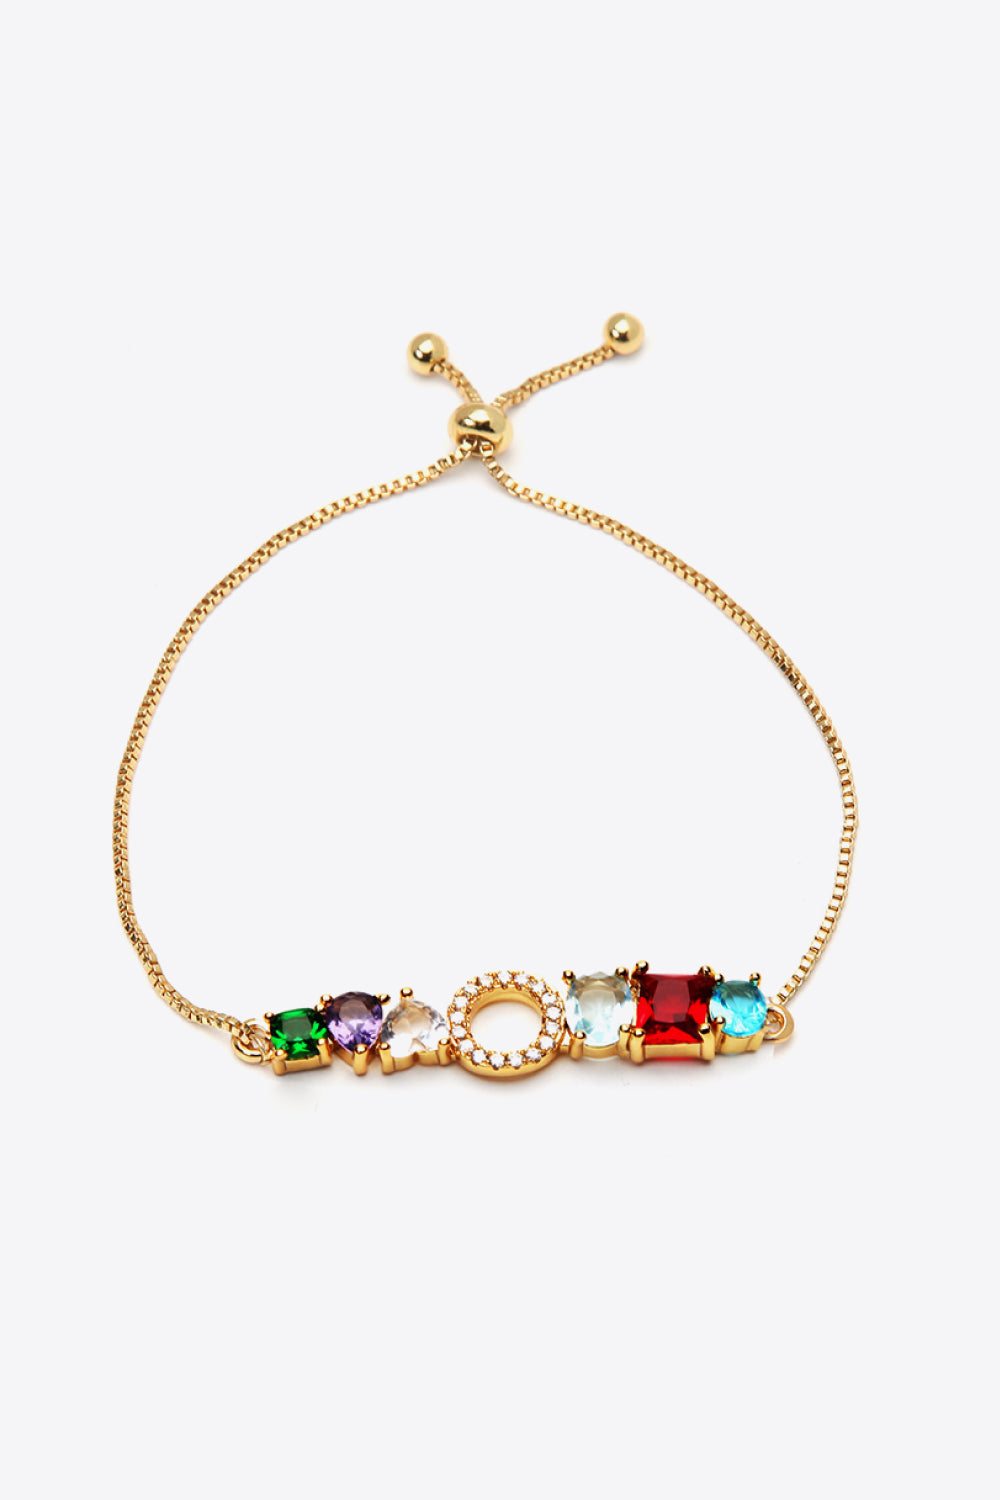 K to T Zircon Bracelet - O / One Size - Women’s Jewelry - Bracelets - 13 - 2024